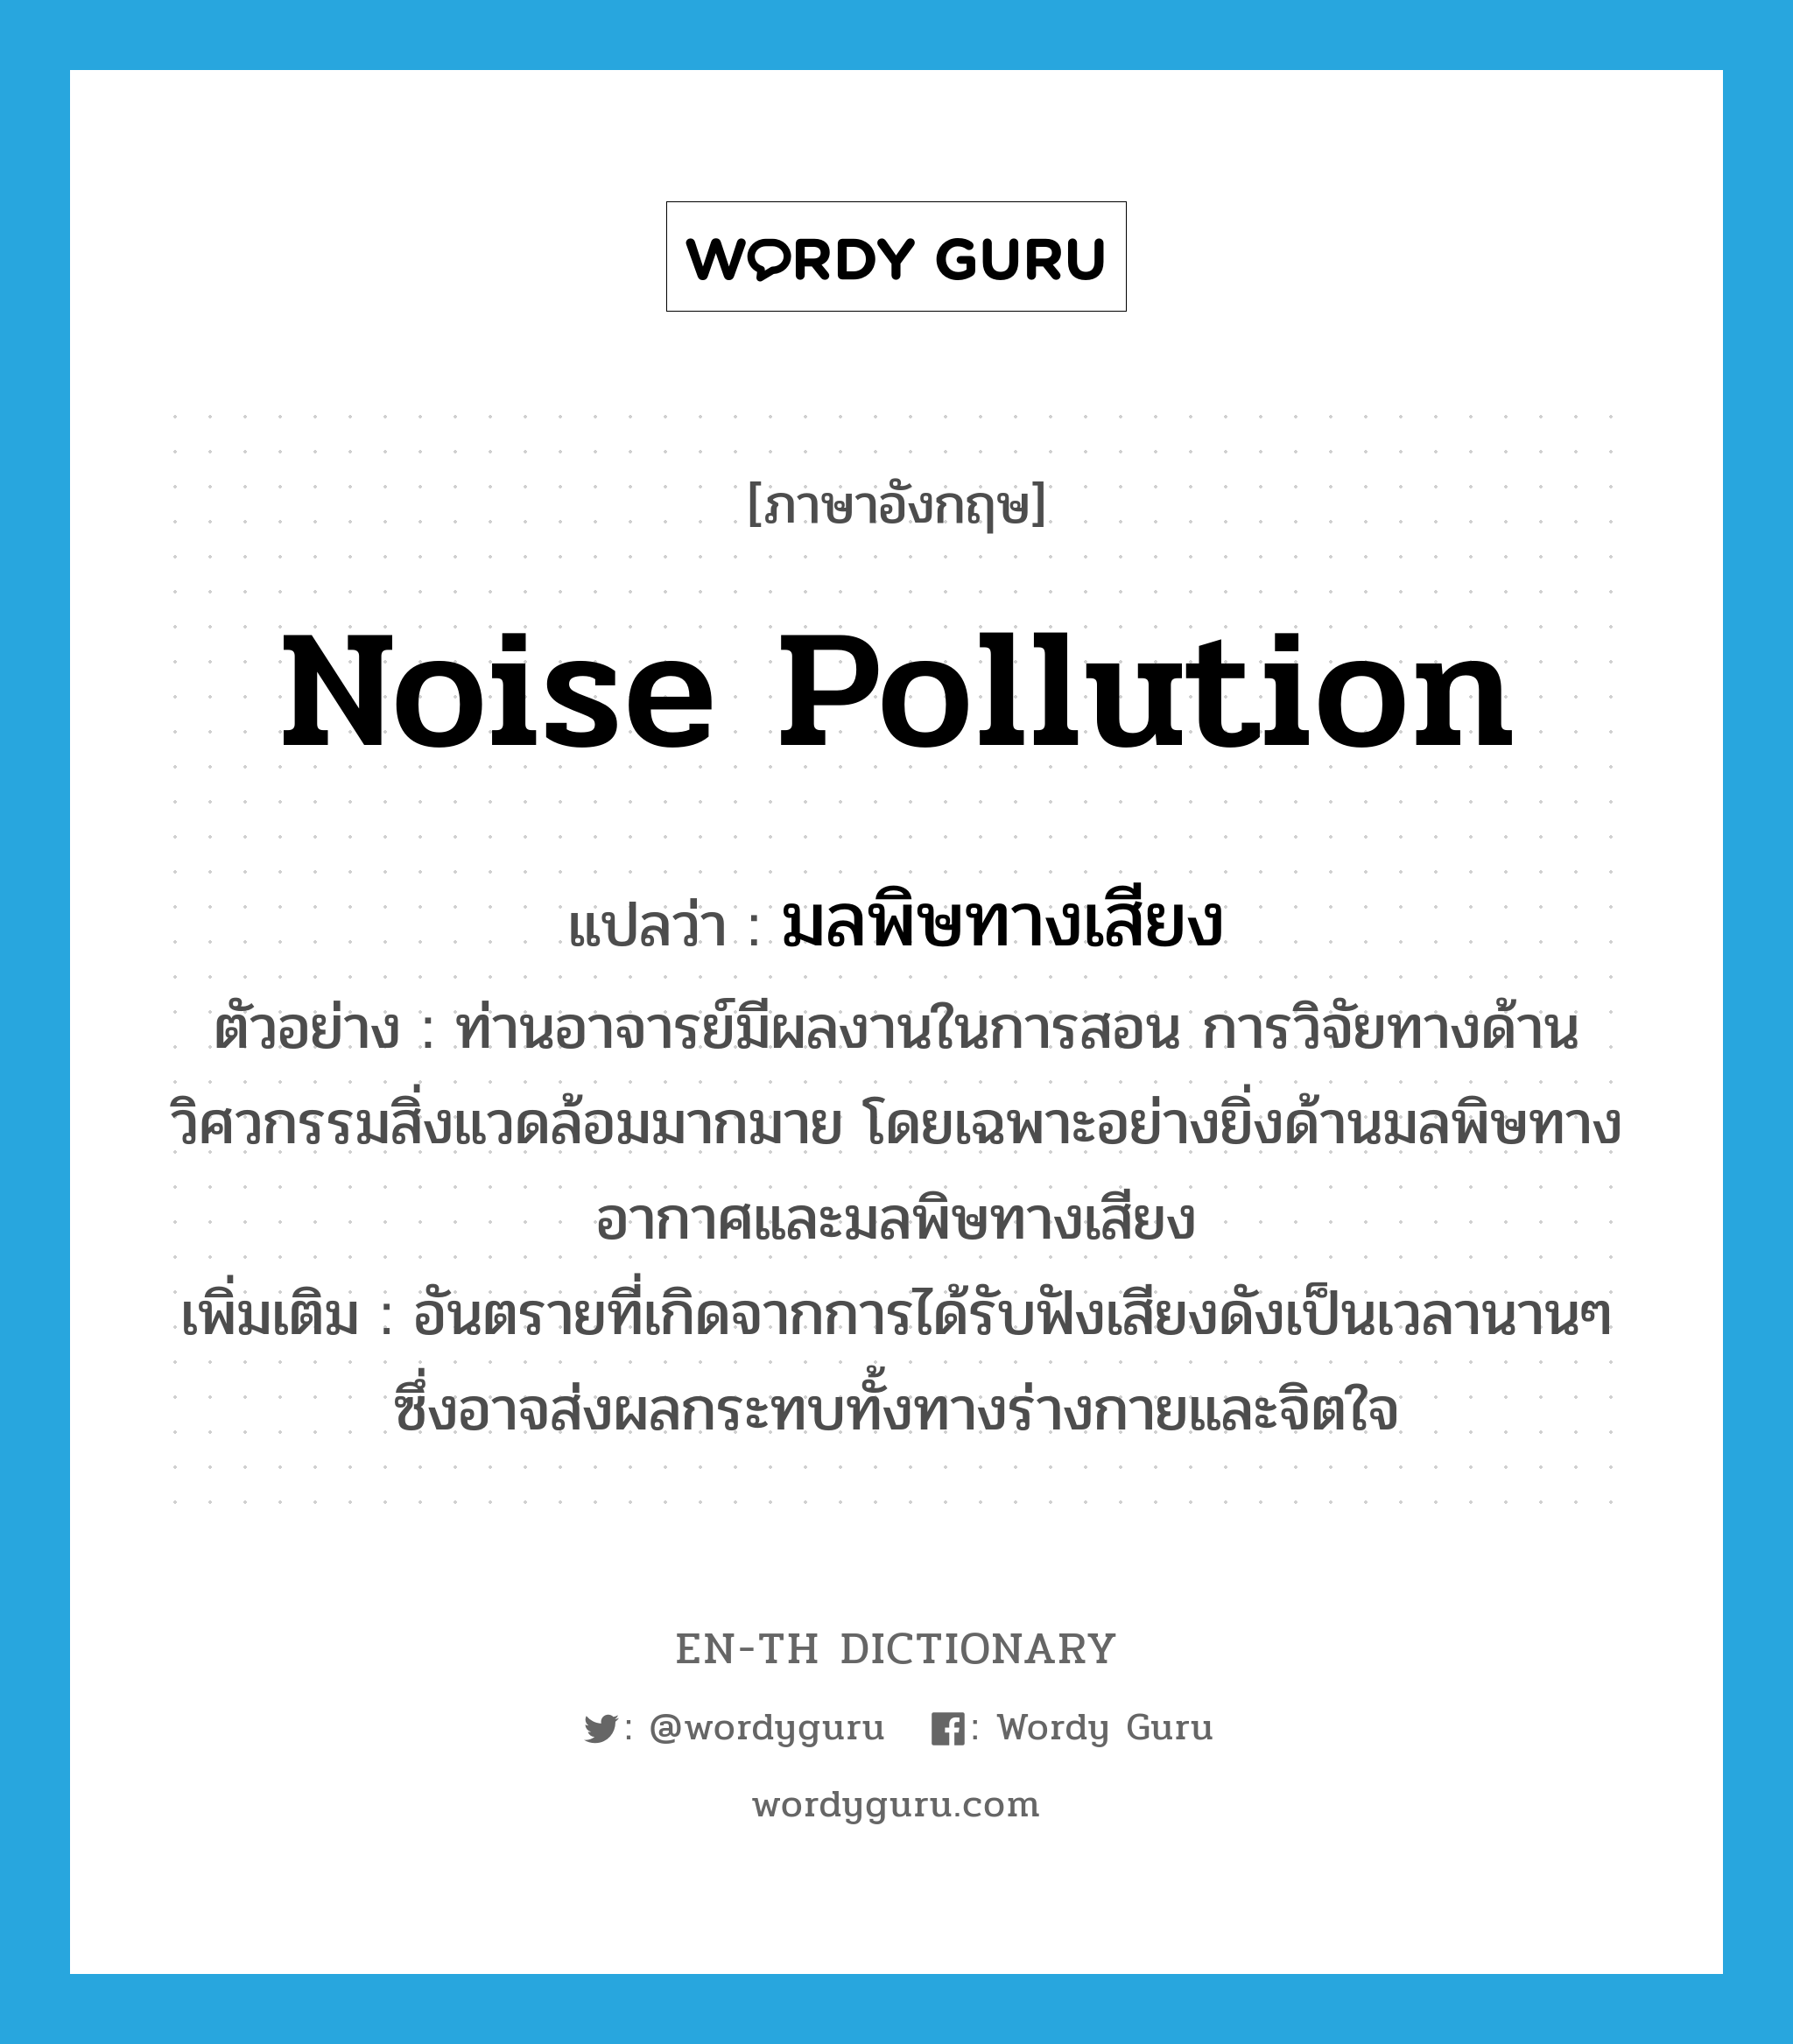 มลพิษทางเสียง ภาษาอังกฤษ?, คำศัพท์ภาษาอังกฤษ มลพิษทางเสียง แปลว่า noise pollution ประเภท N ตัวอย่าง ท่านอาจารย์มีผลงานในการสอน การวิจัยทางด้านวิศวกรรมสิ่งแวดล้อมมากมาย โดยเฉพาะอย่างยิ่งด้านมลพิษทางอากาศและมลพิษทางเสียง เพิ่มเติม อันตรายที่เกิดจากการได้รับฟังเสียงดังเป็นเวลานานๆ ซึ่งอาจส่งผลกระทบทั้งทางร่างกายและจิตใจ หมวด N